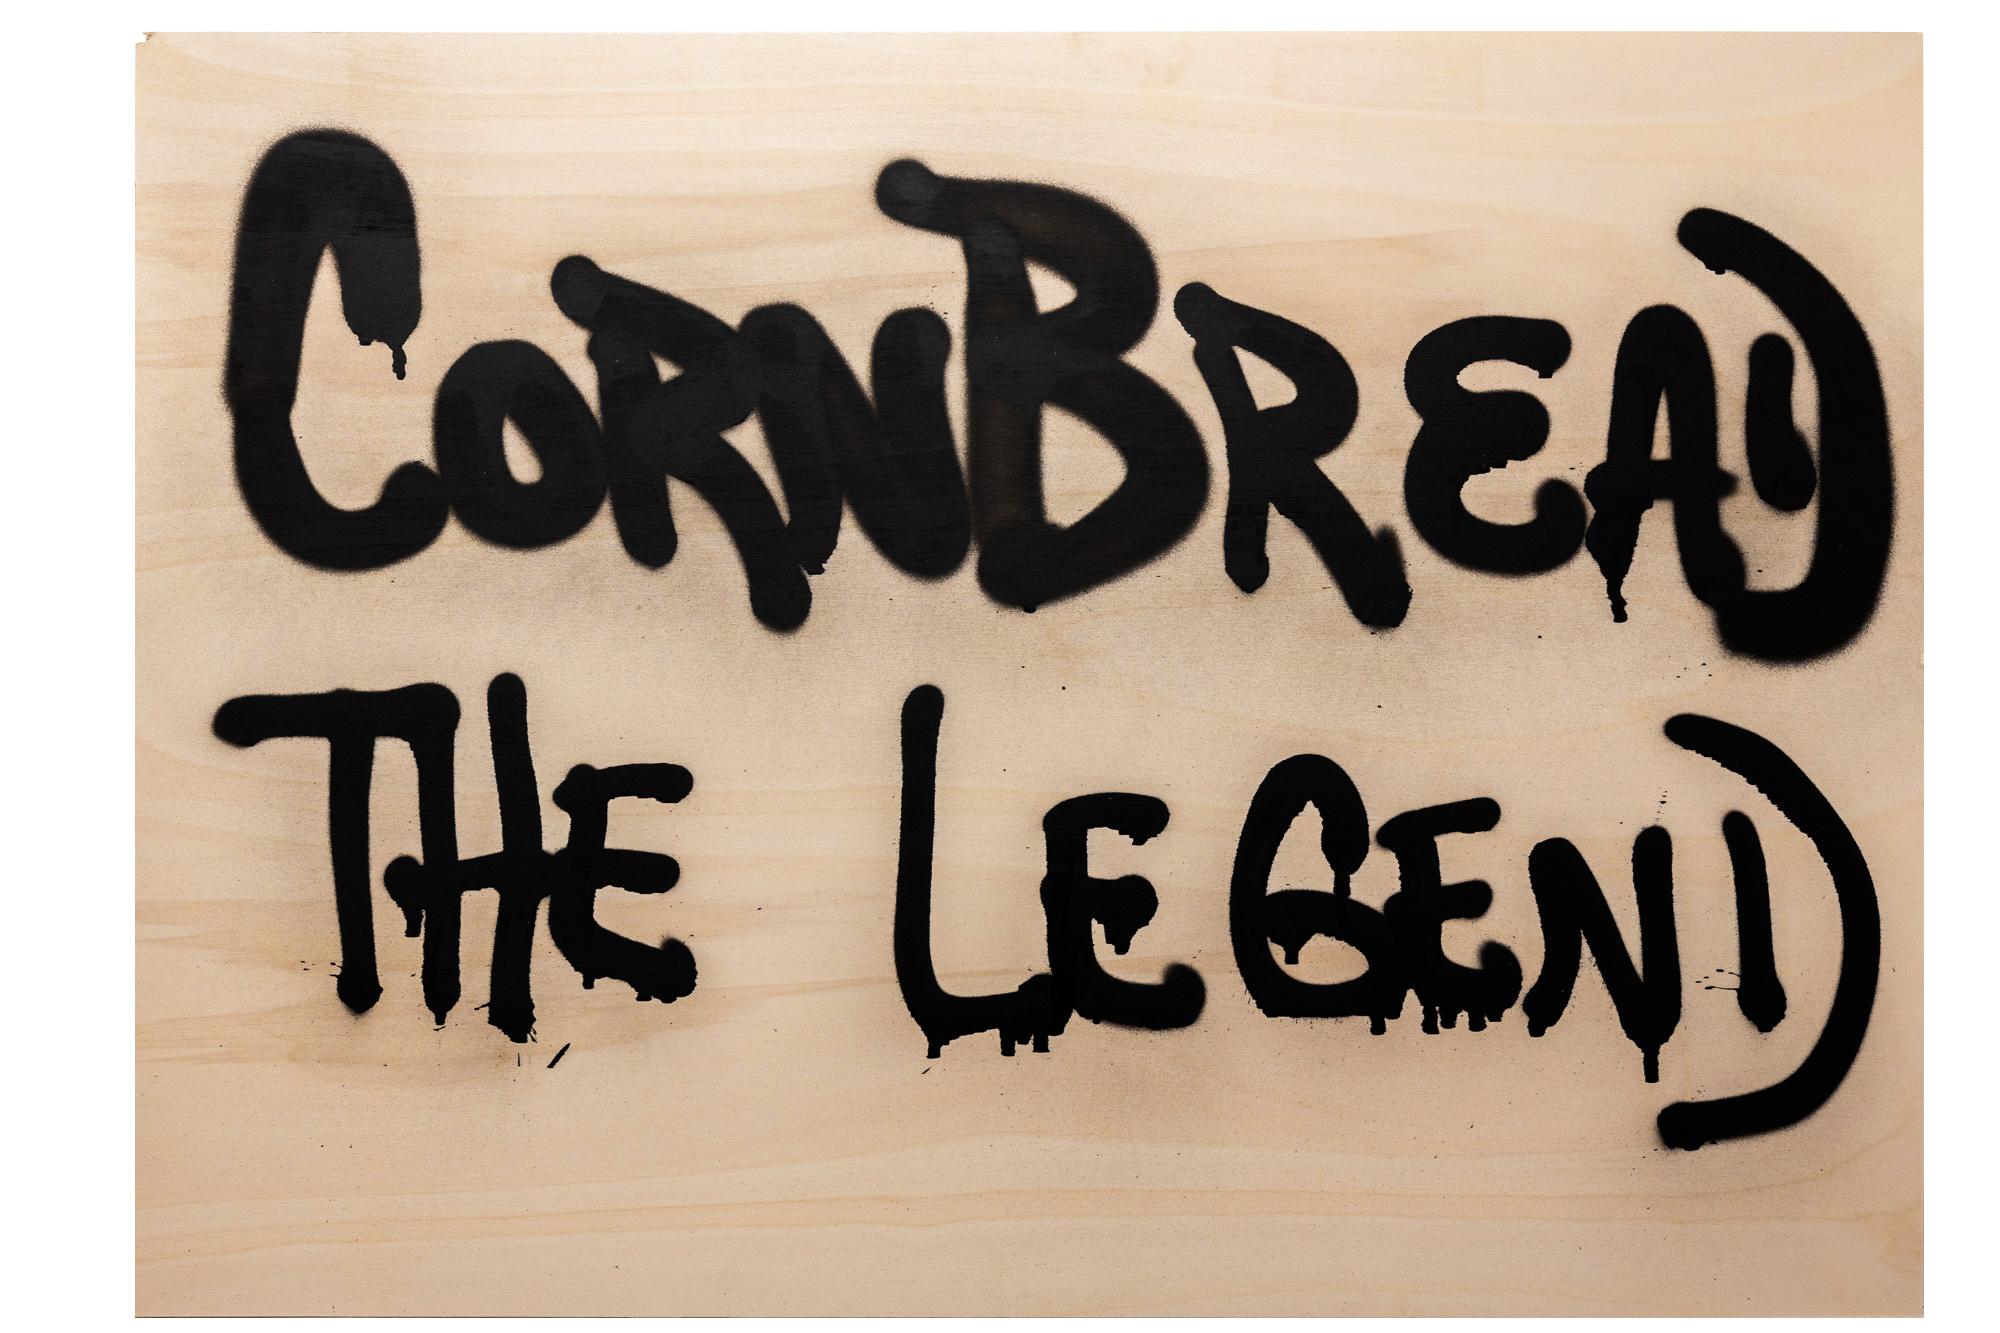 Cette œuvre d'art intitulée "Fresh Cut : Cornbread the Legend" est une œuvre originale de Cornbread réalisée à l'acrylique sur bois. L'œuvre mesure 89,5cm x 125cm / 35,25in x 49,25in sans cadre, et est expédiée sans cadre.

Darryl McCray, connu sous